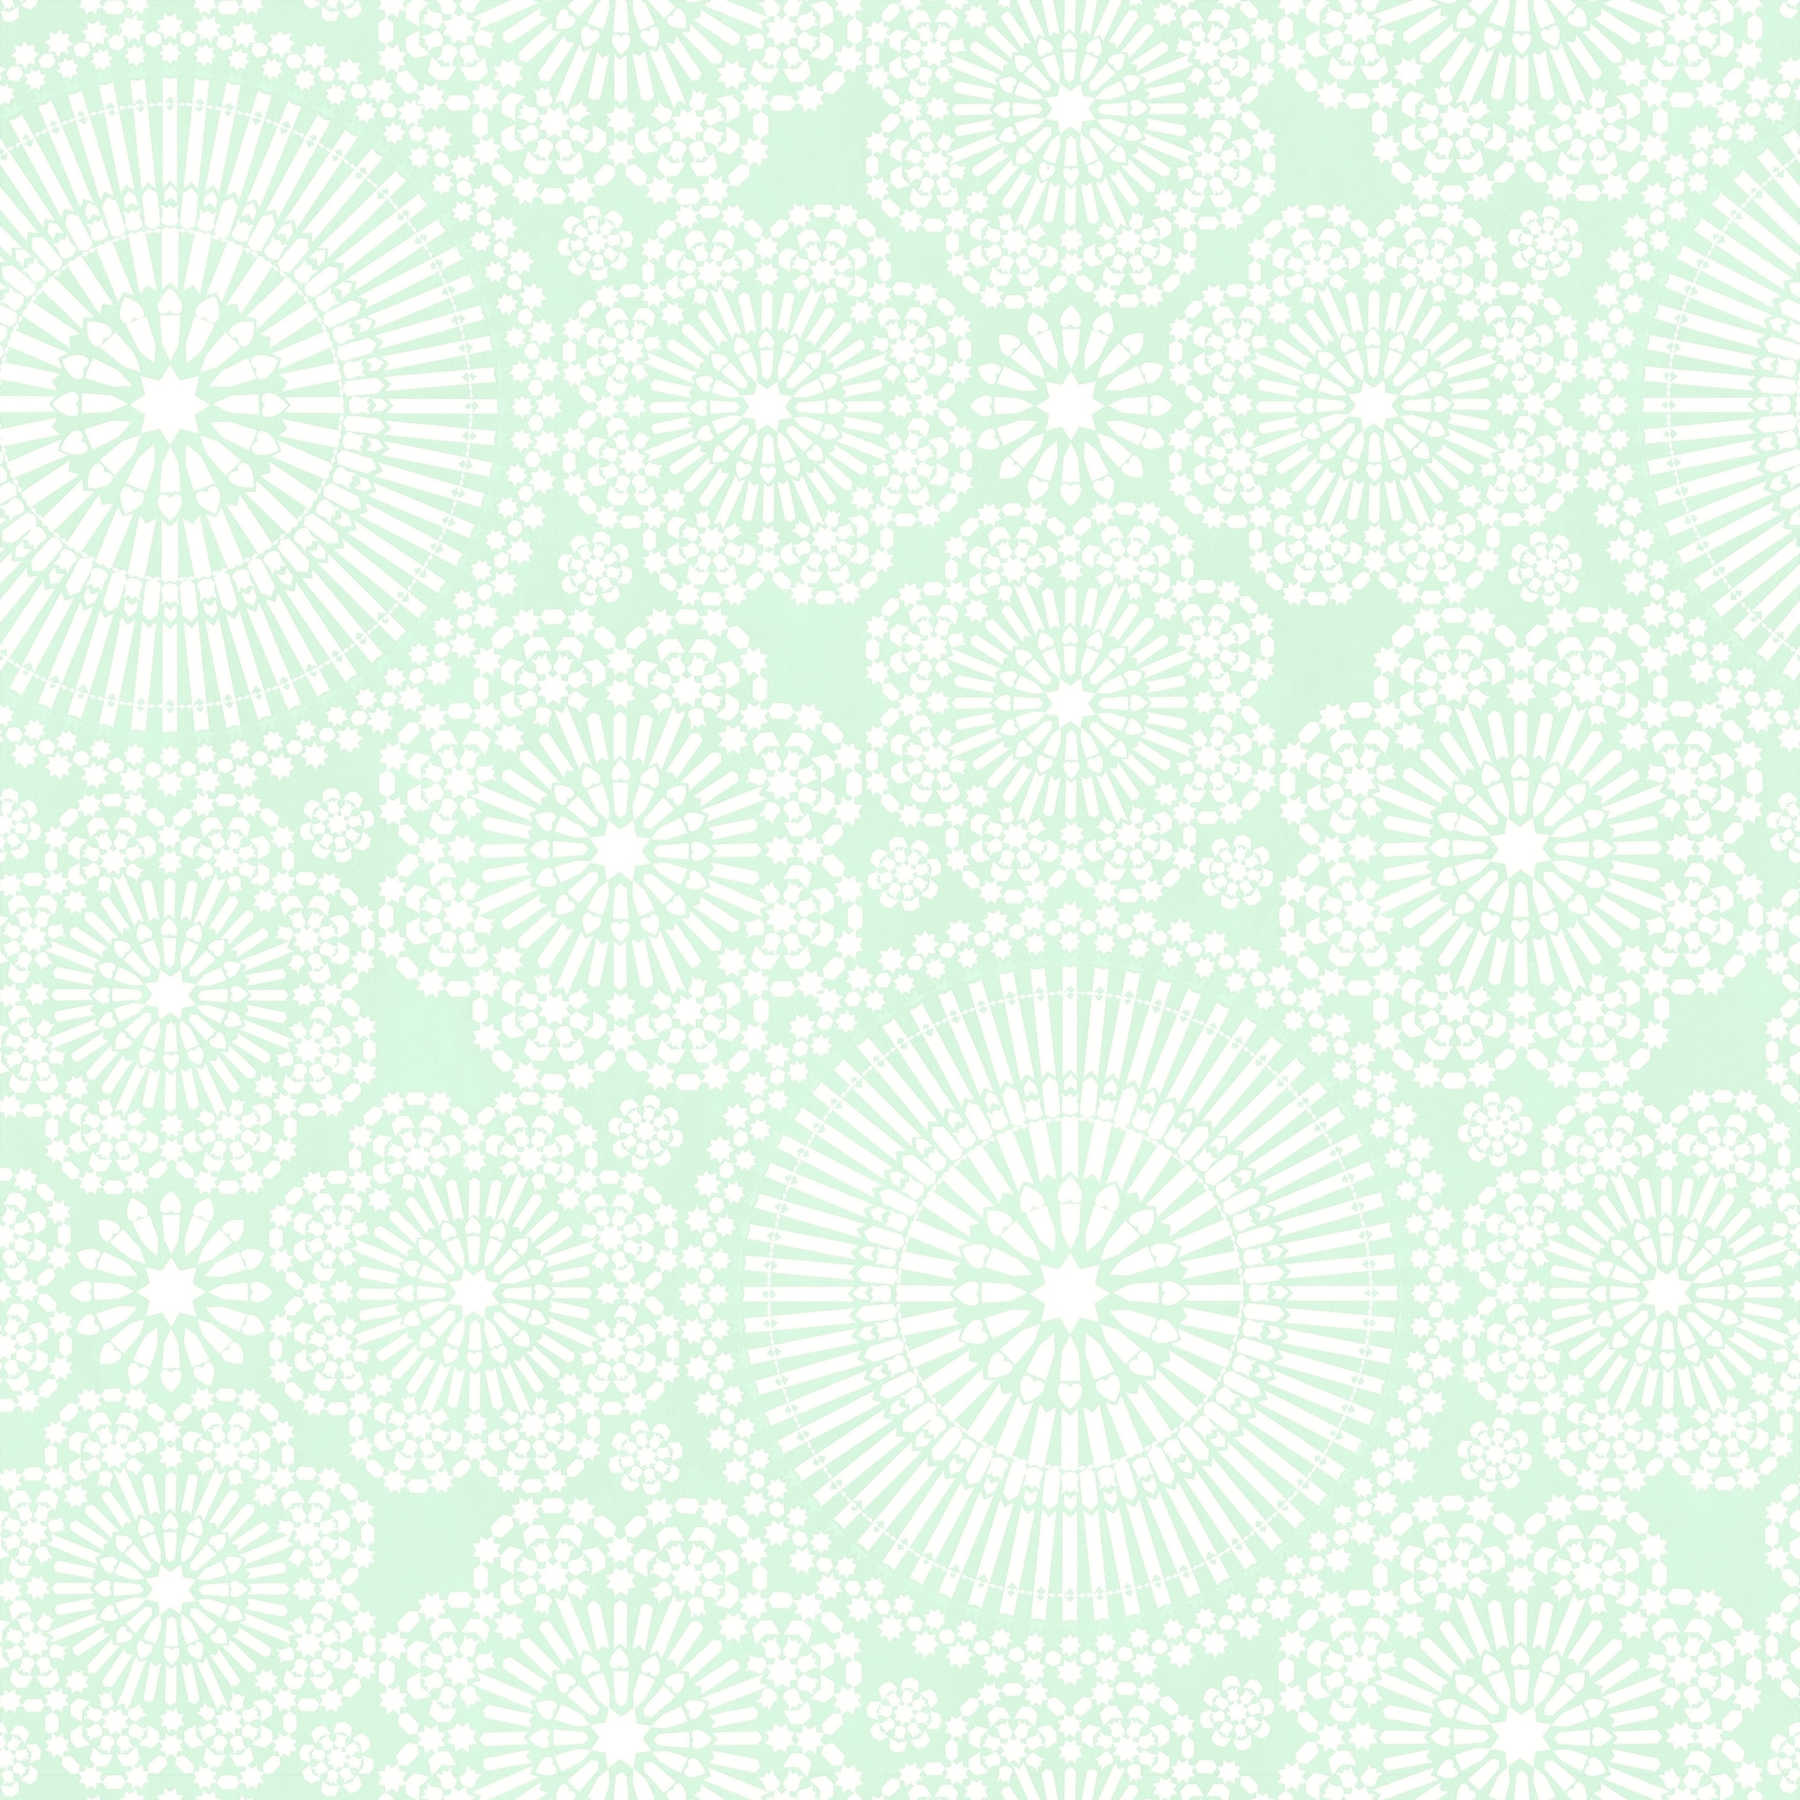         Mandala Tapete mit Blumen Design – Blau, Grün, Weiß
    